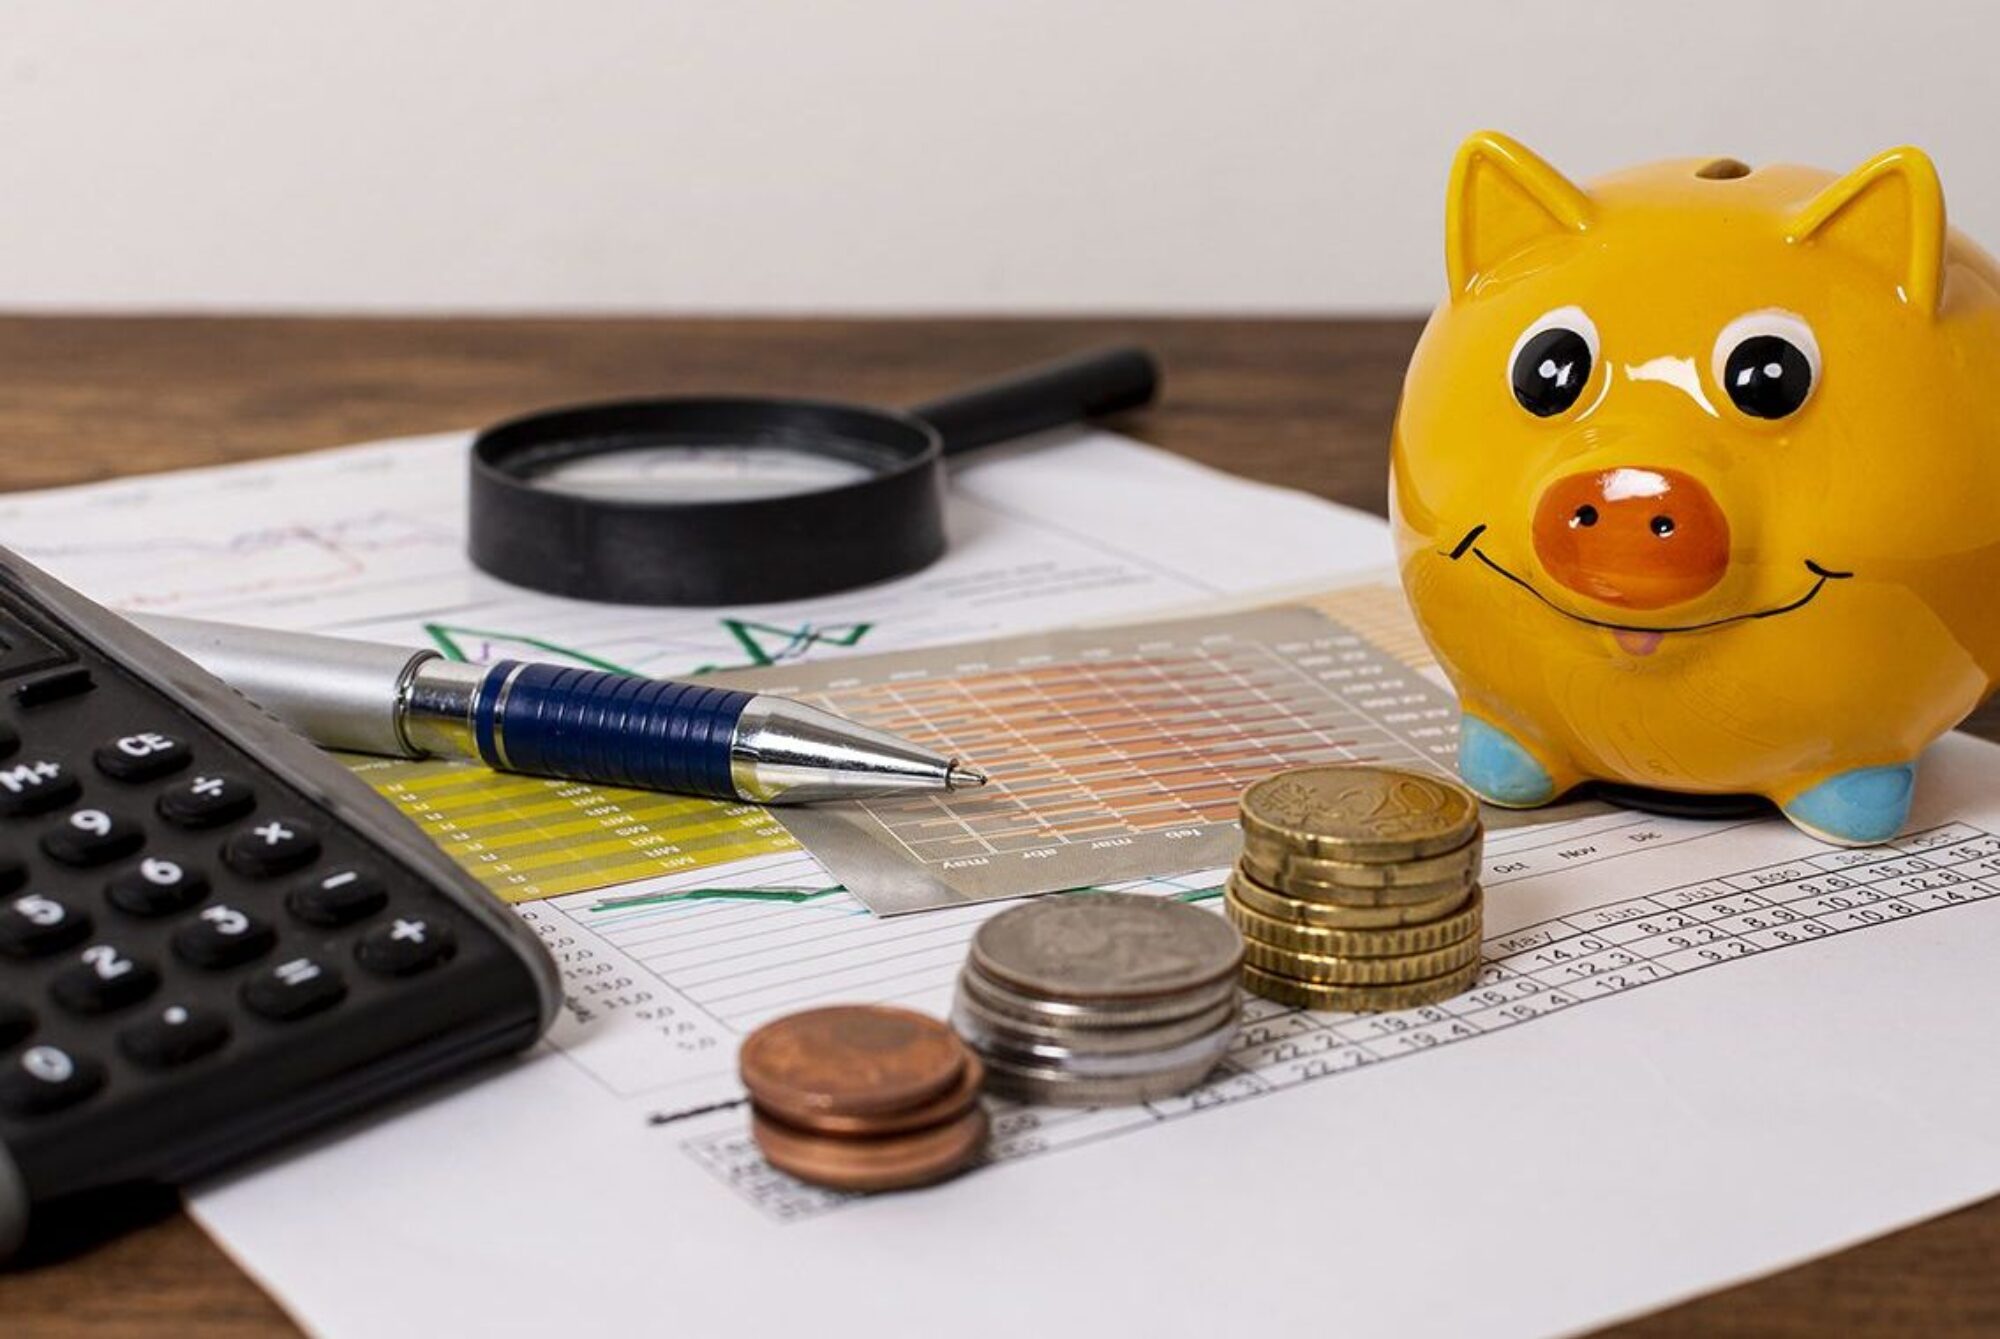 Un cochon jaune à côté de pièces de monnaie, d'une calculette, d'un stylo et d'une loupe posés sur une feuille de calcule sur une table en bois